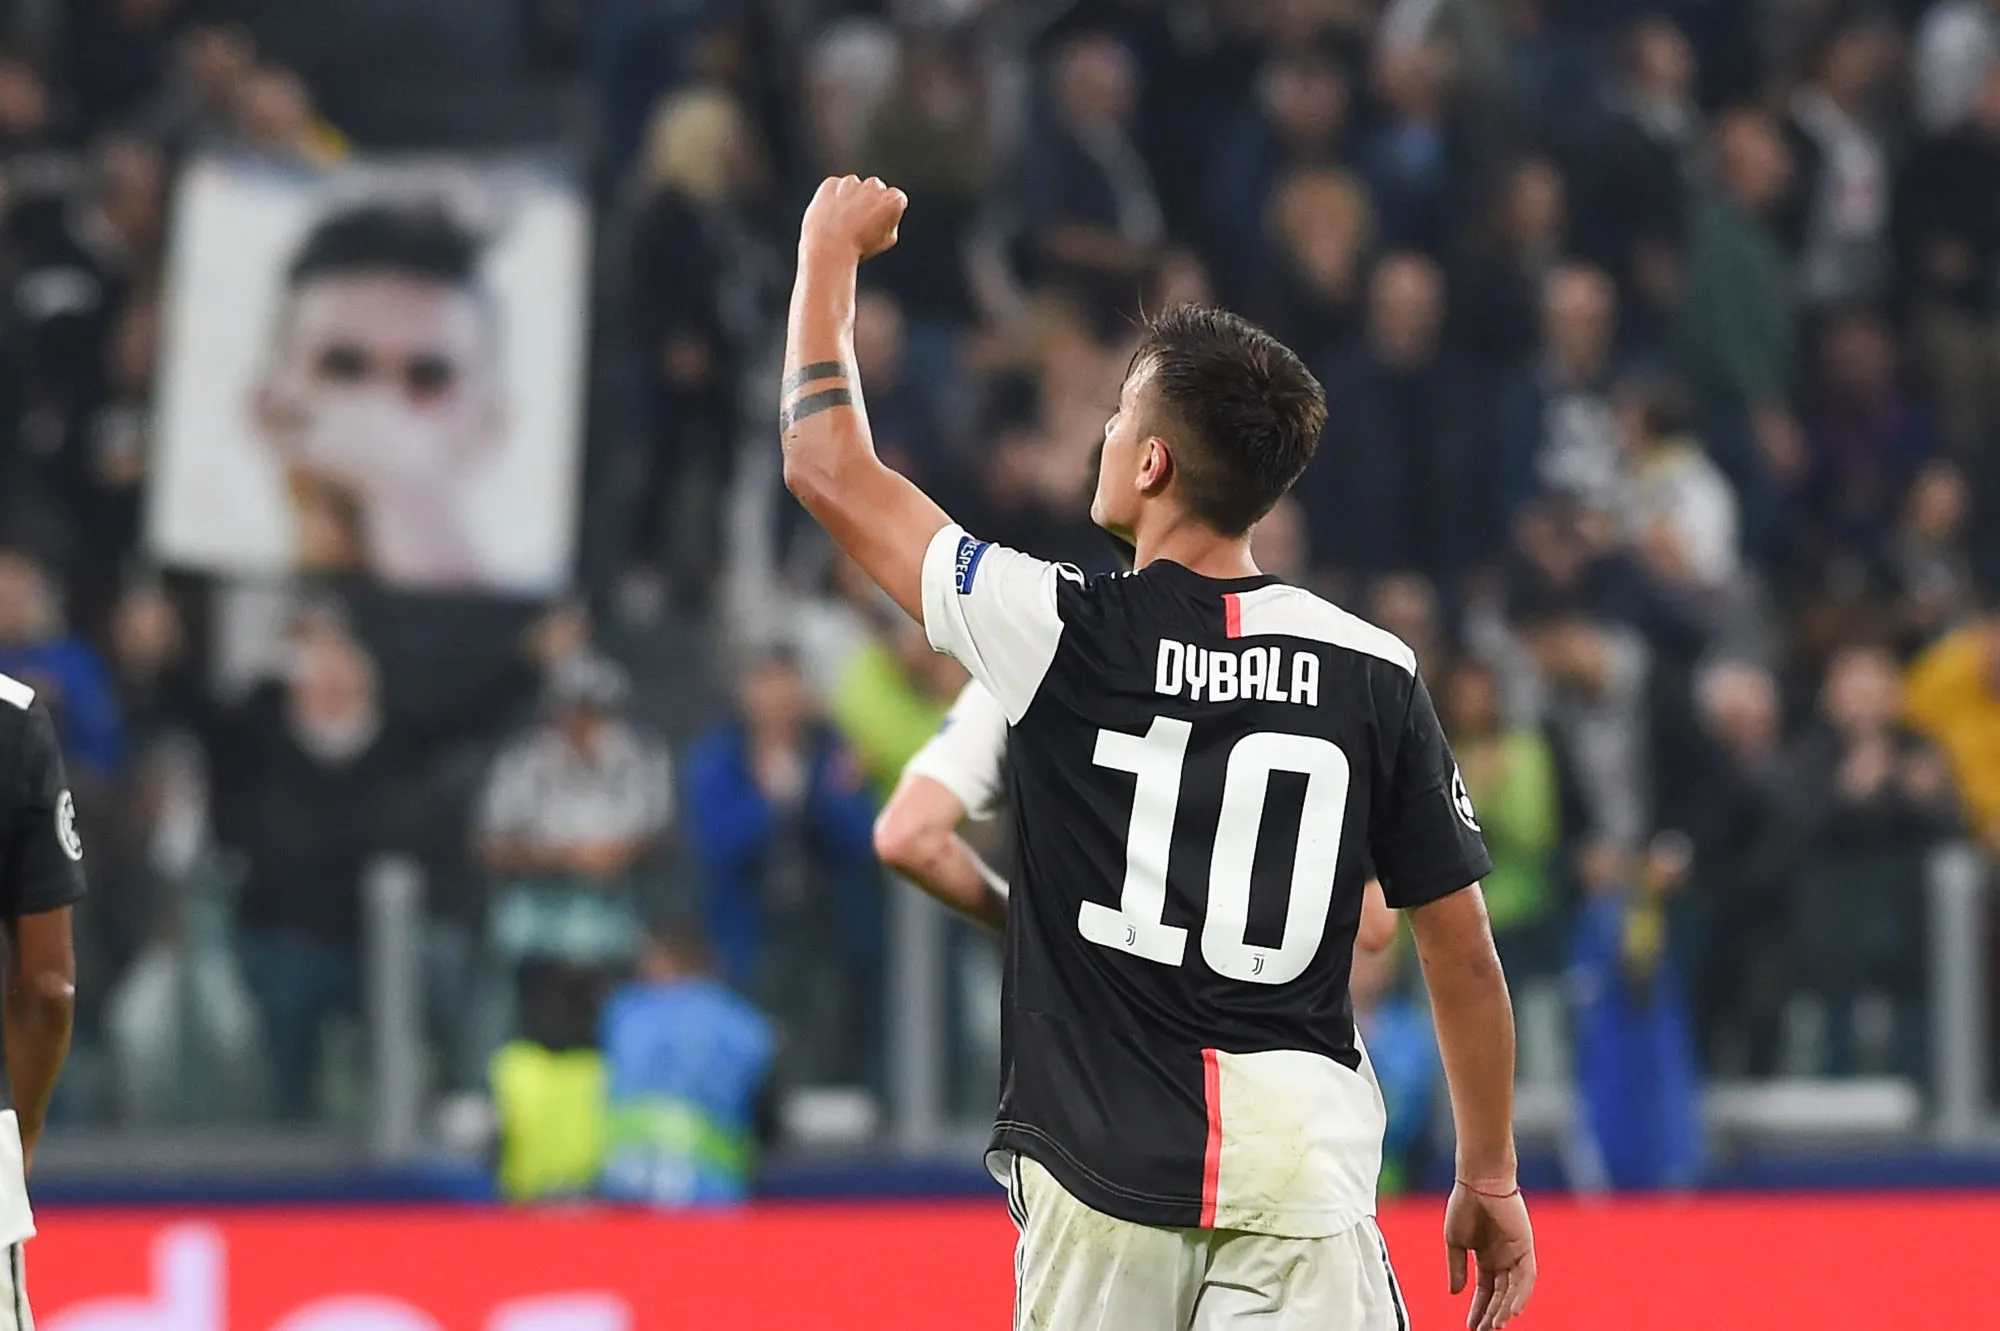 Pronostic Juventus Inter Milan : Analyse, prono et cotes du match de Serie A